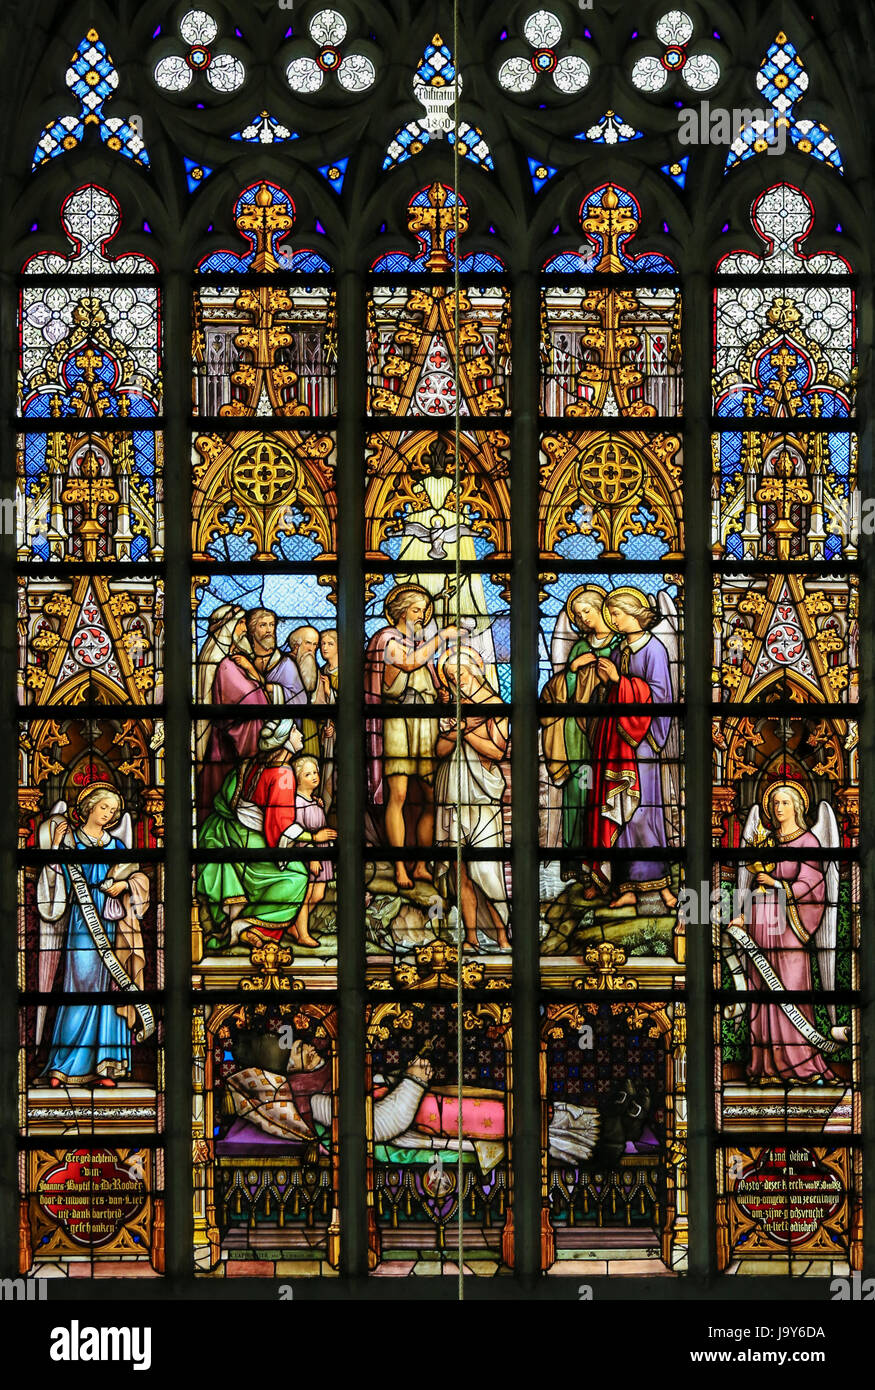 Vitrail de l'église St Gummarus à Lier, Belgique, représentant le baptême de Jésus dans le Jourdain par saint Jean Baptiste Banque D'Images